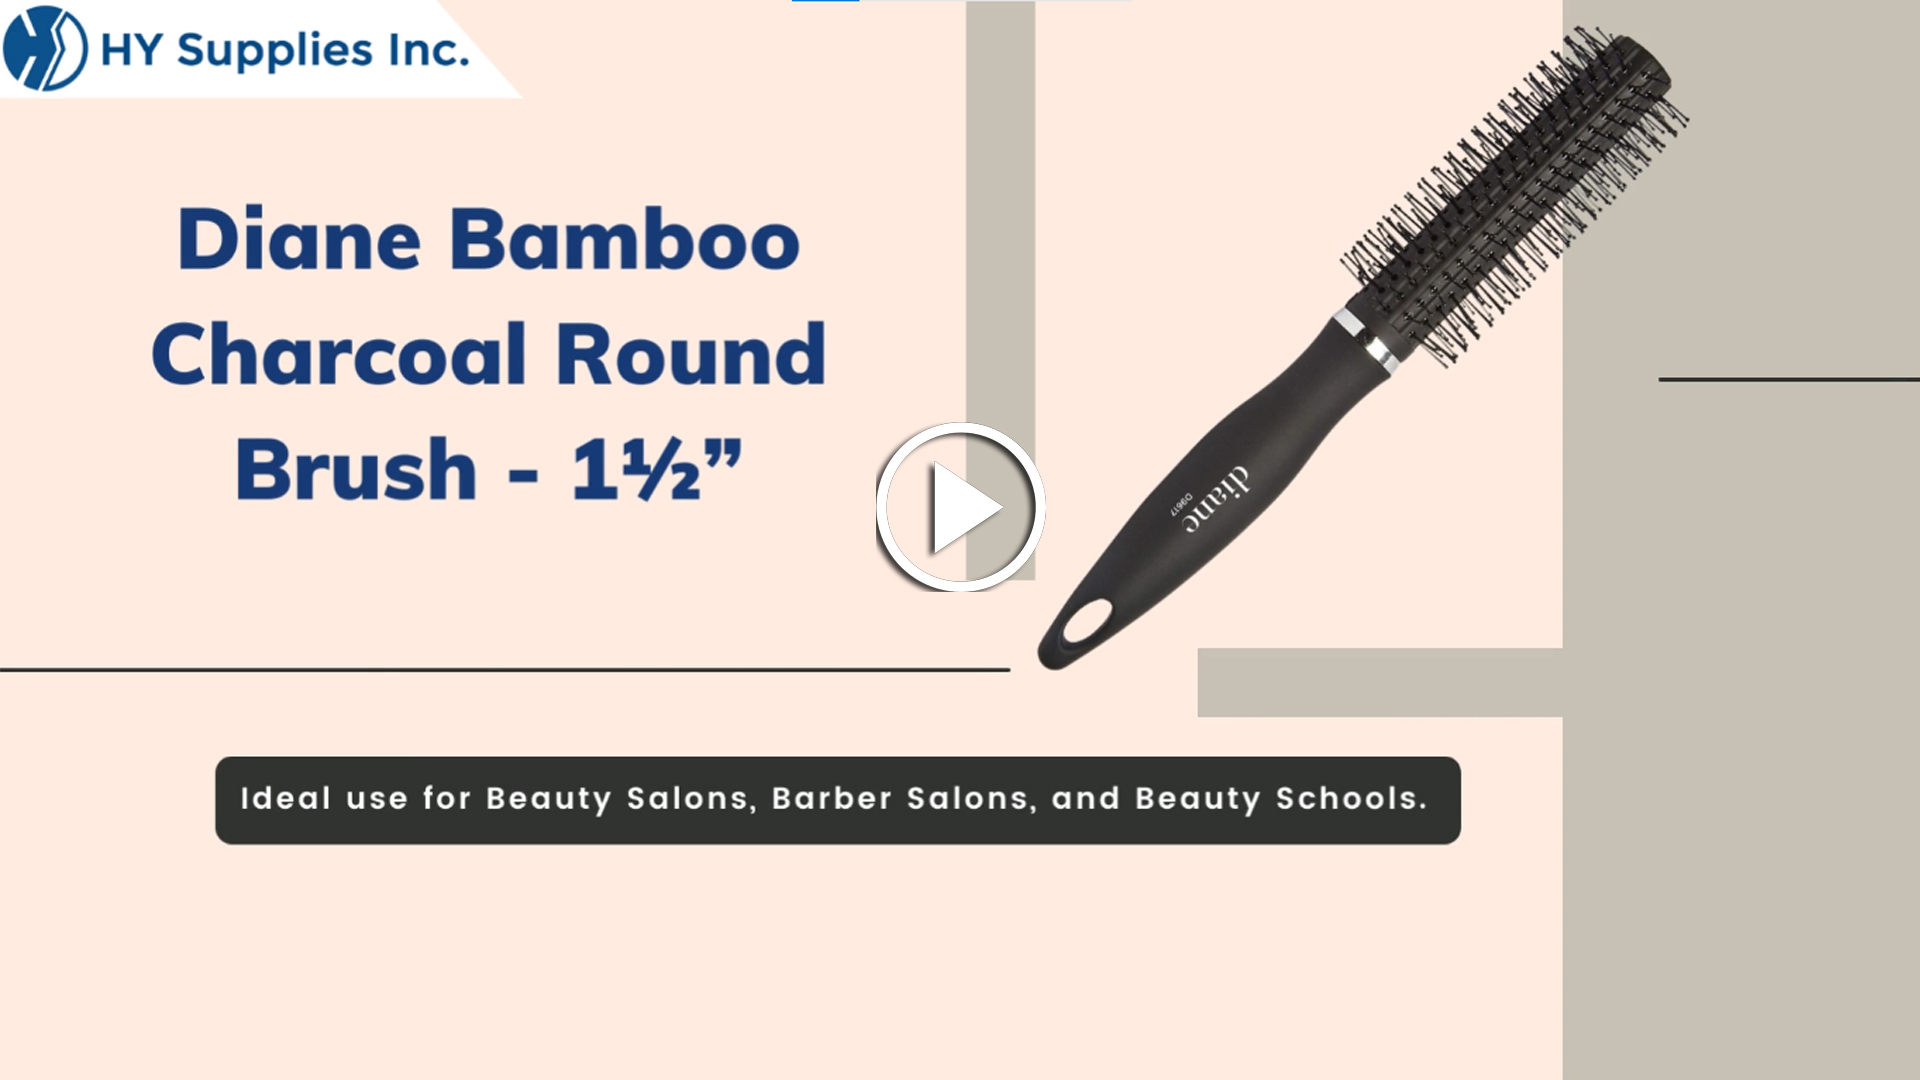 Diane Bamboo Charcoal Round Brush - 1½"